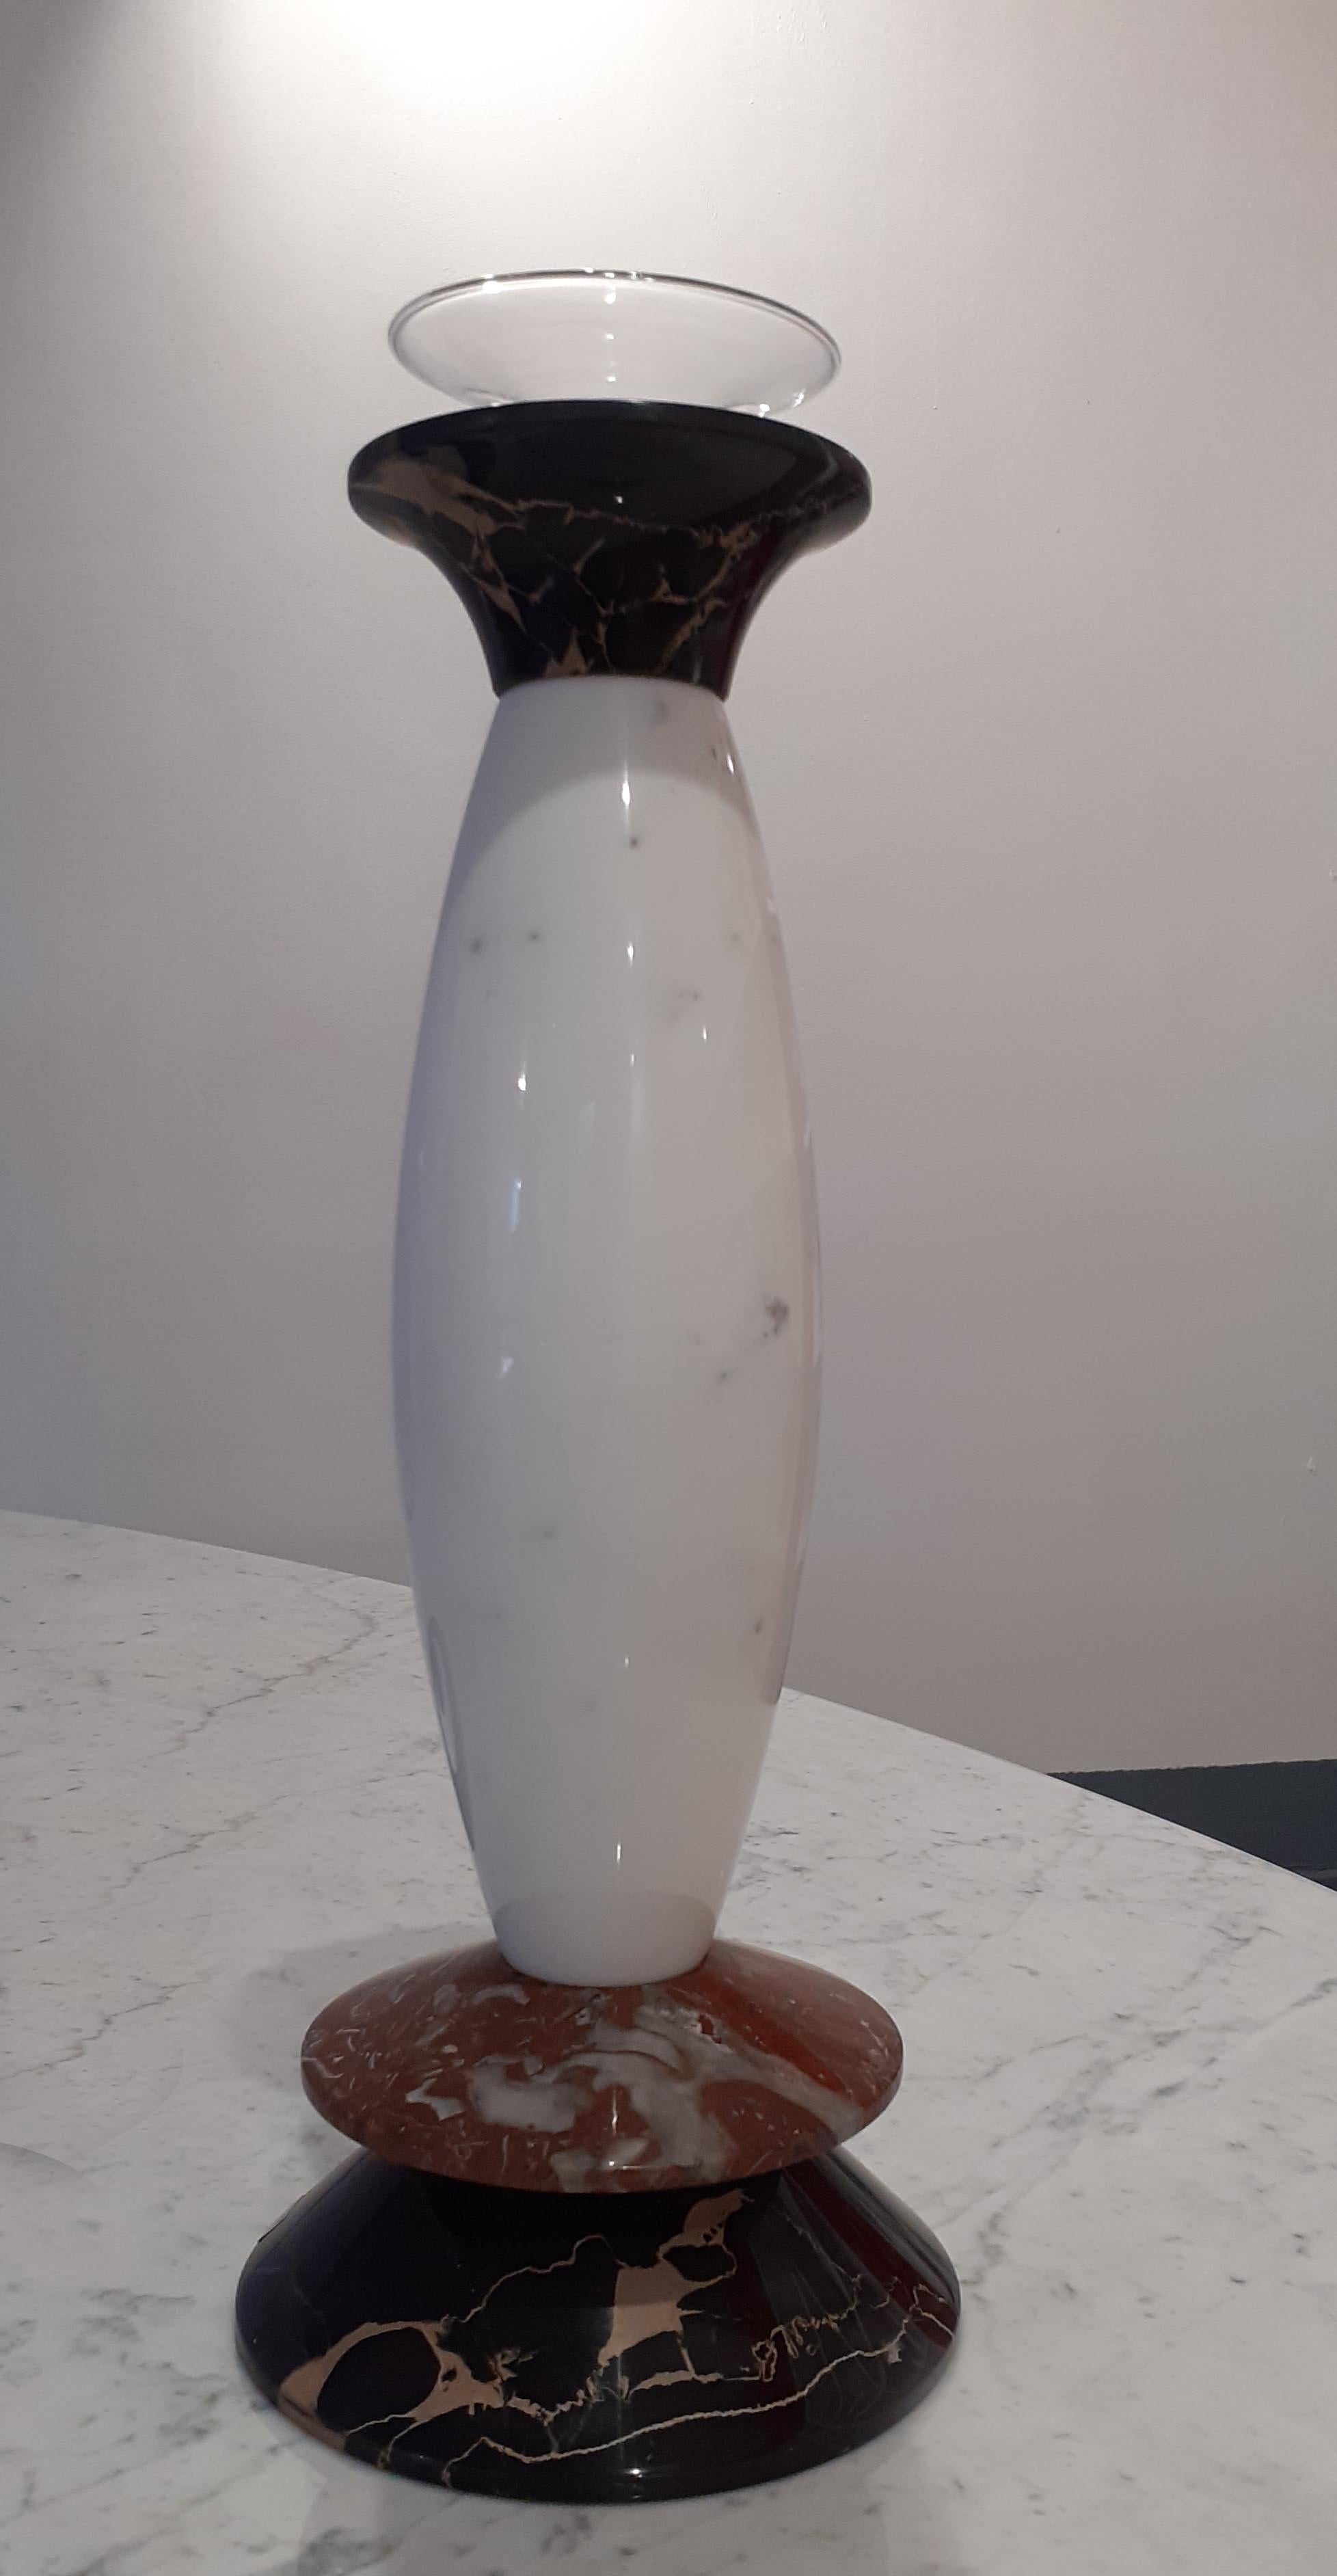 Vase aus mittelgroßem Marmor und mundgeblasenem Glas, entworfen 1986 von Matteo Thun und realisiert mit drei verschiedenen MATERIALEN, Nero Portoro, Bianco Carrara Rosso Francia. 

Größe: Cm. Ø 8 x 25 H.
MATERIALIEN: Bianco Carrara + Nero Portoro